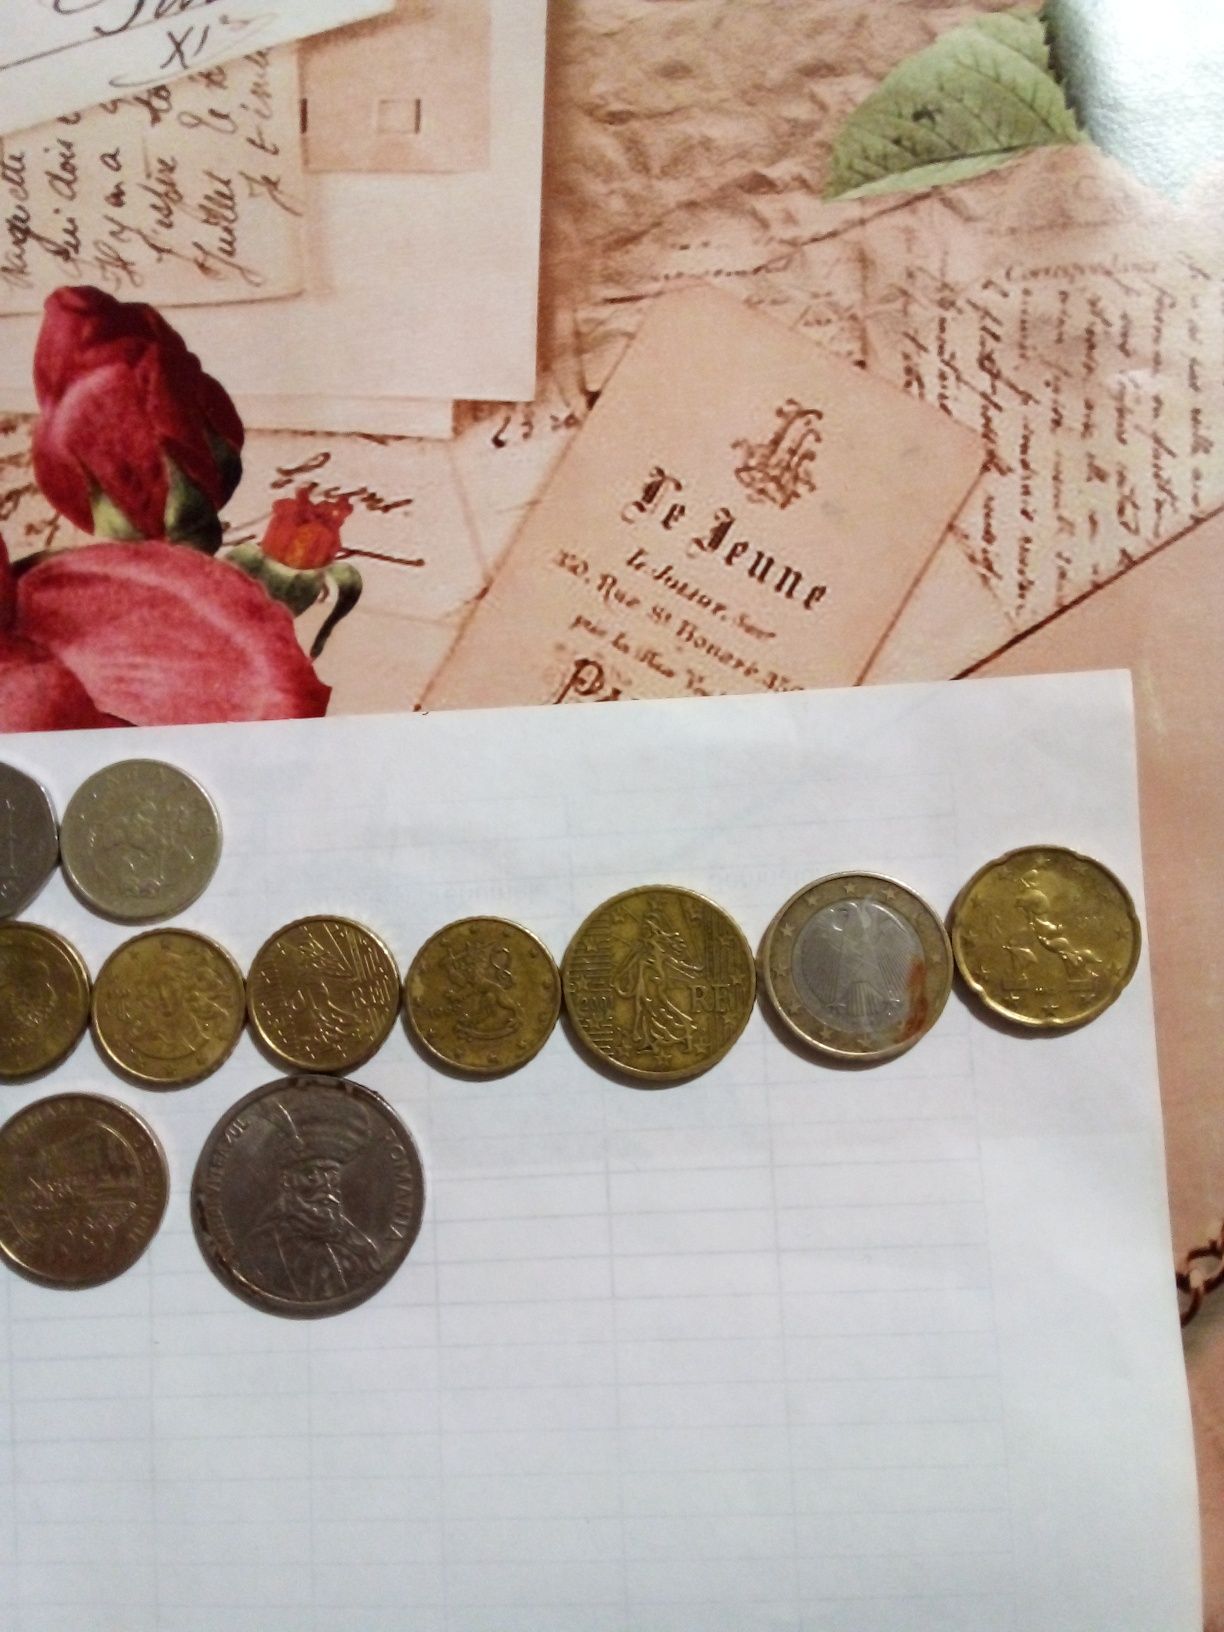 Bancnotă de 5000 lei plus alte monezi vechi